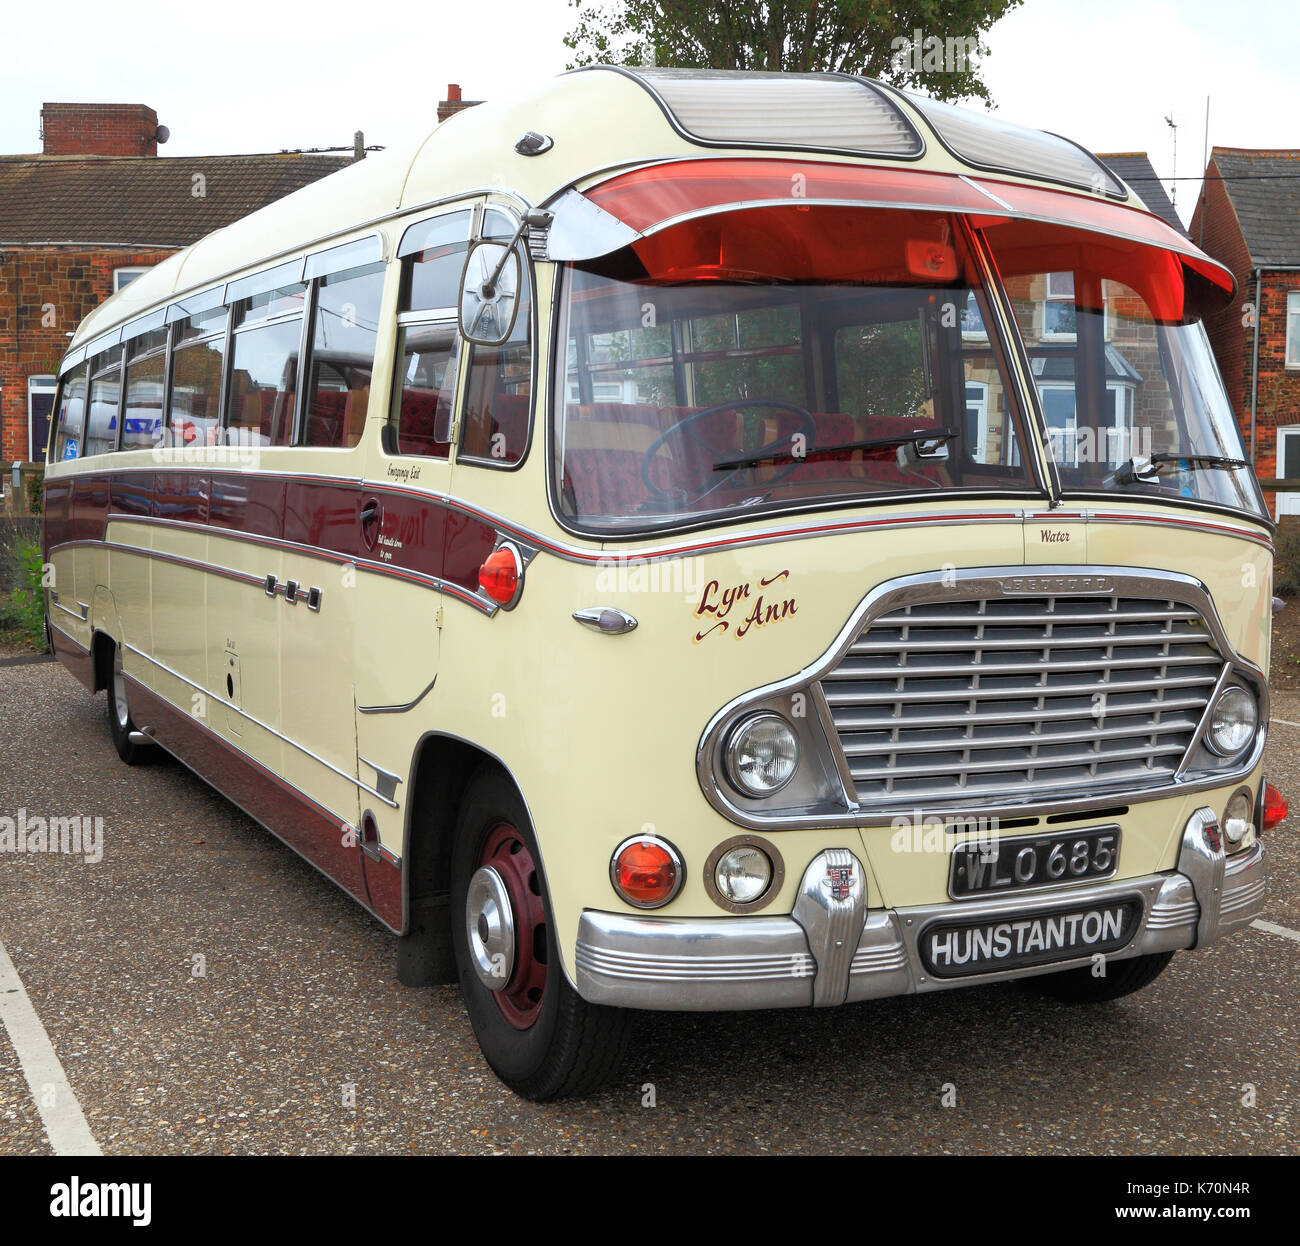 Jahrgang Trainer, gebaut 1959, Trainer, spratt's Trainer, Bus, Busse, von Bedford, Wreningham, Norfolk, England, UK Stockfoto